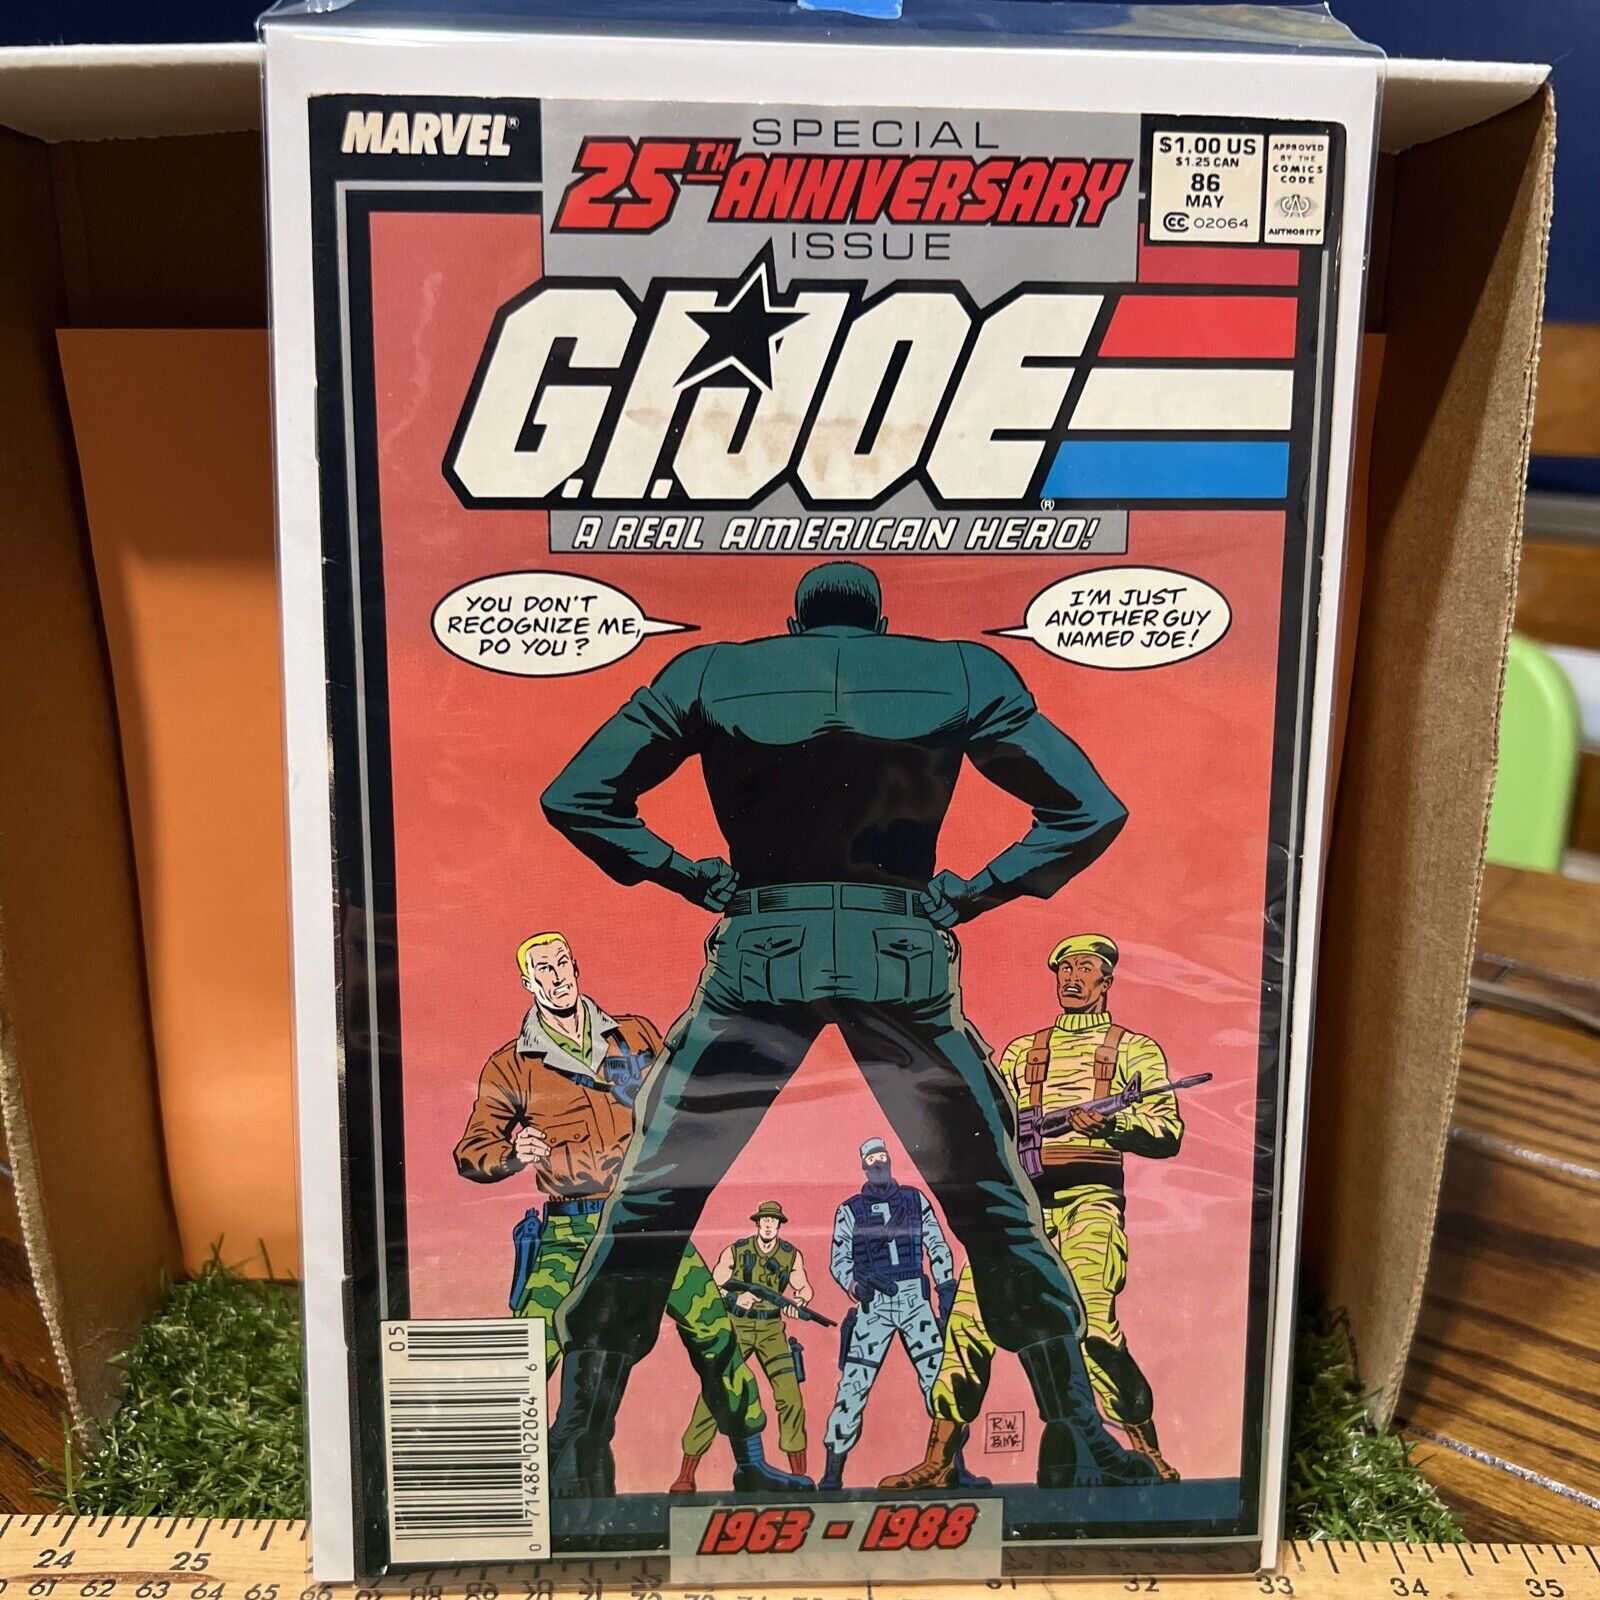 Marvel Comic - GI Joe 25th Anniversary #86 1963-1988 Duke/Stalker Key Issue